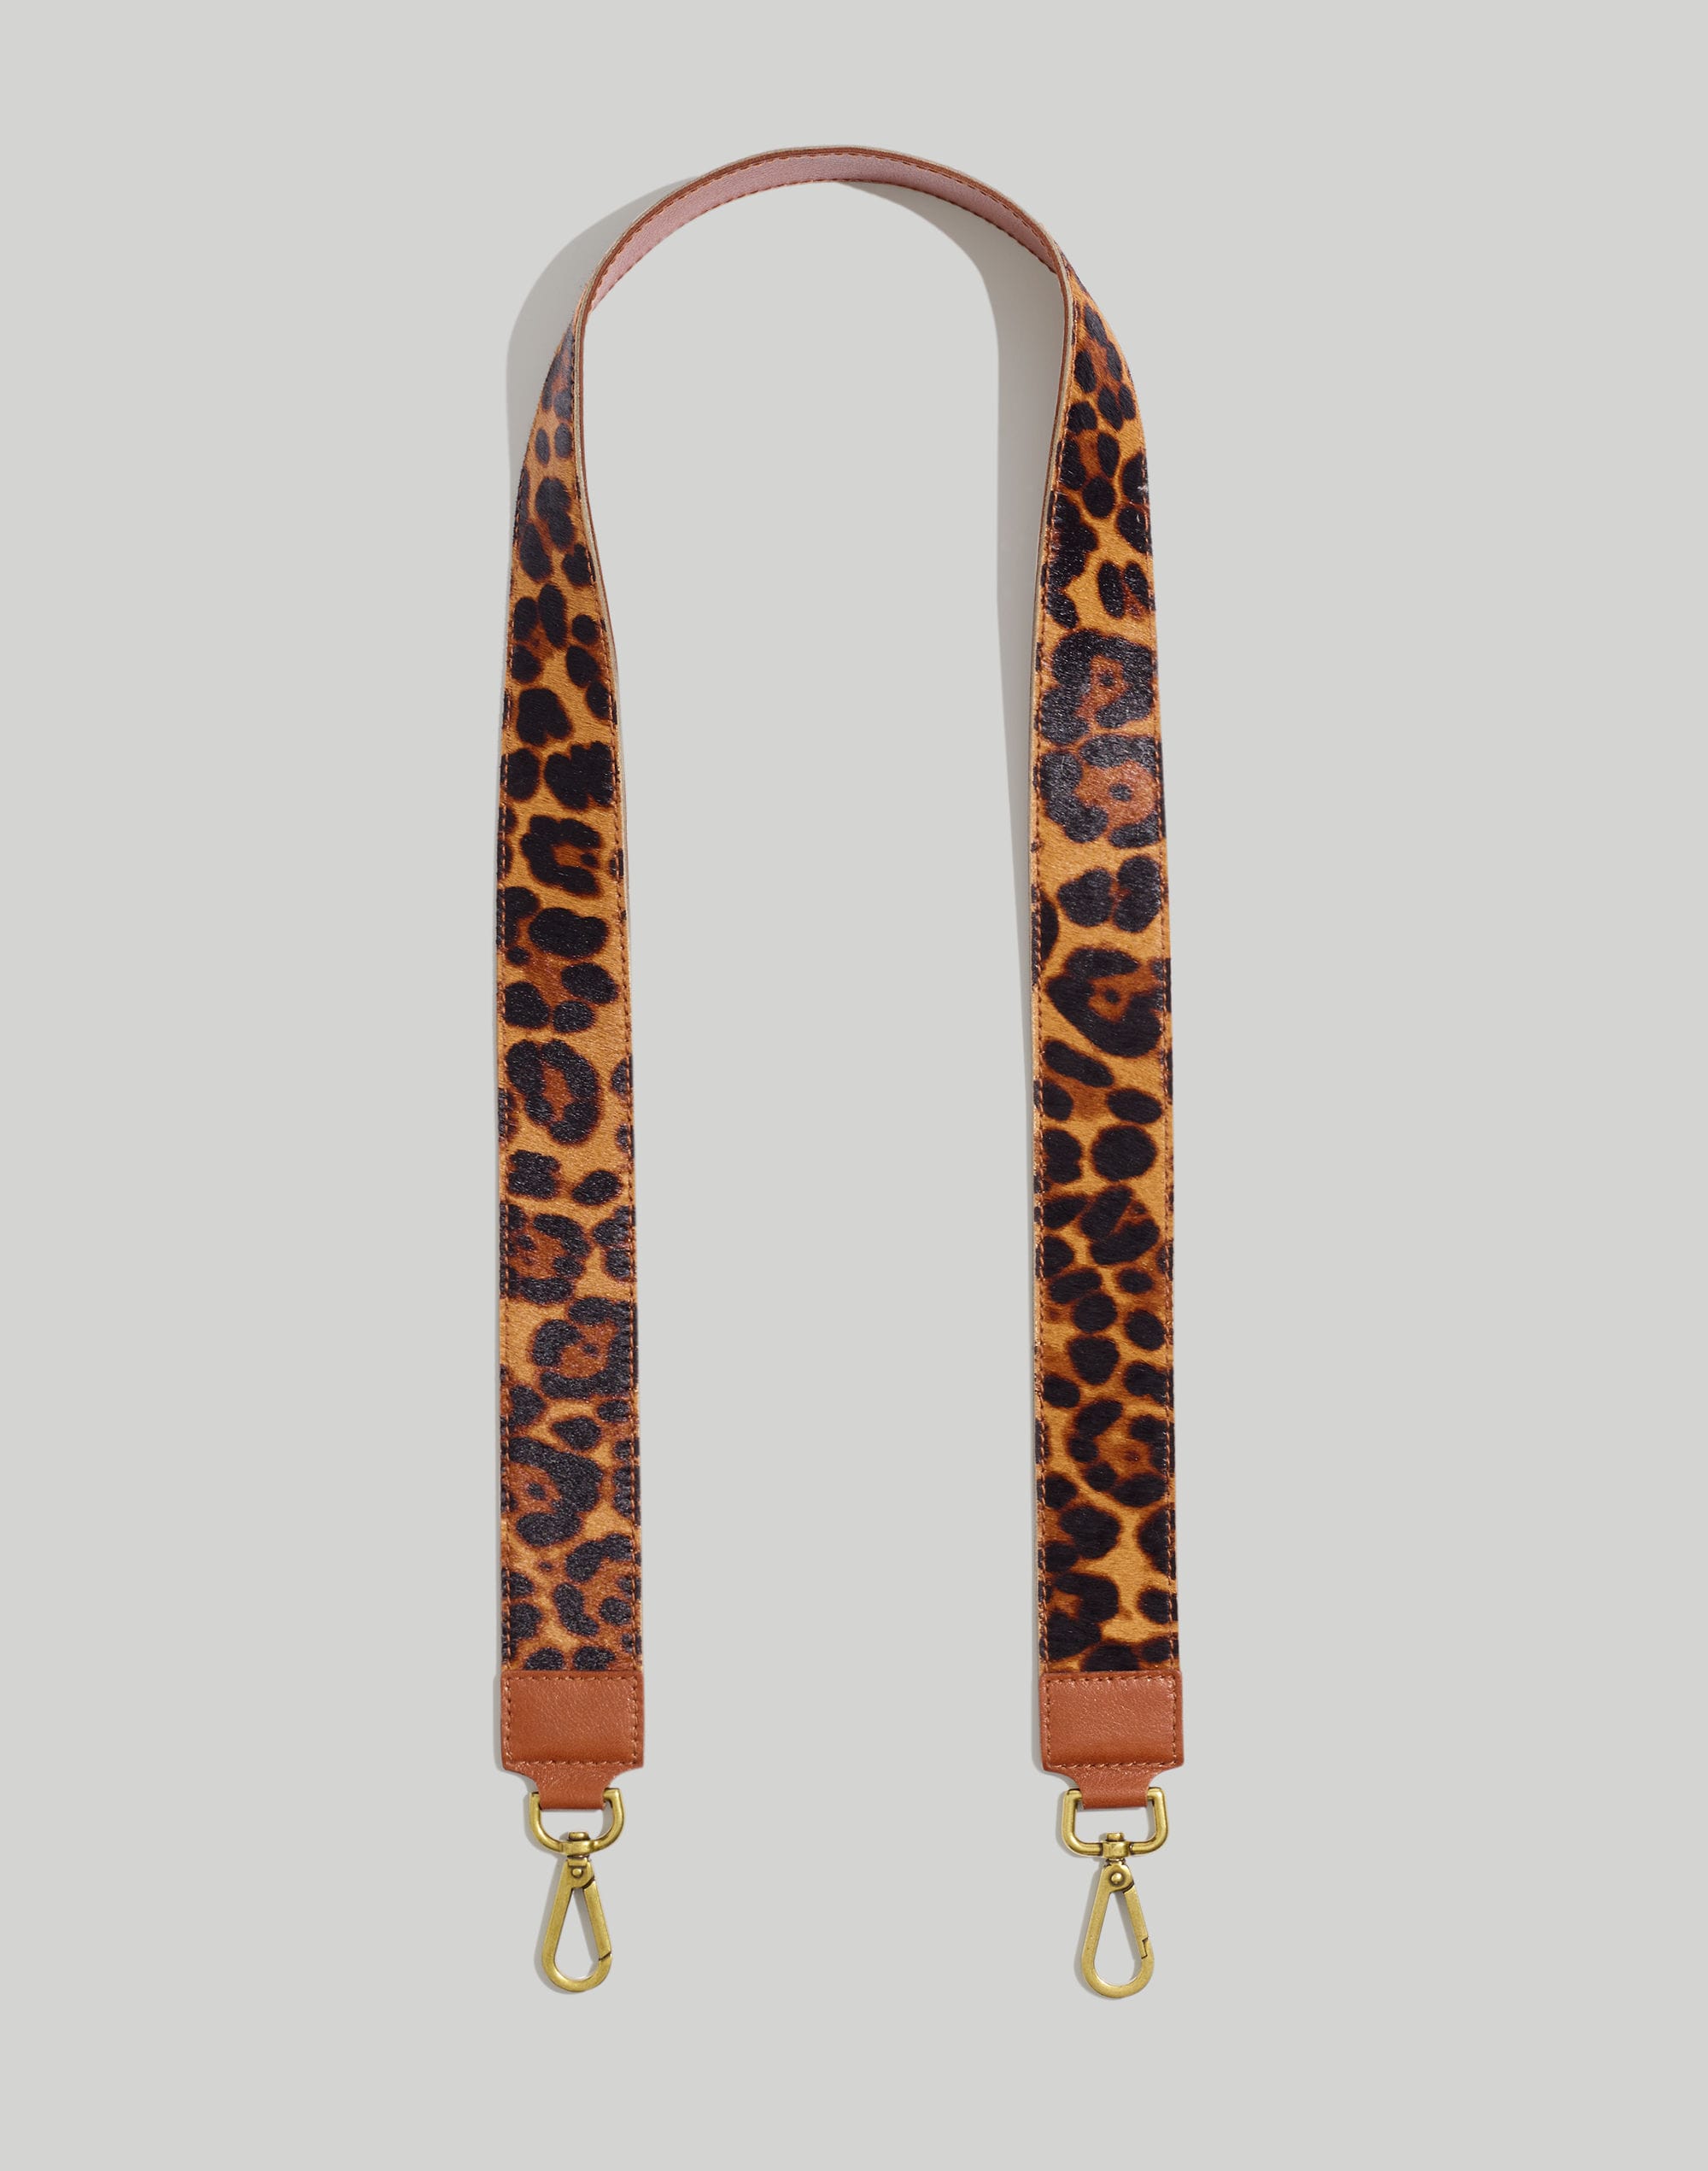 Madewell The Crossbody Bag Strap: Leopard Calf Hair Edition